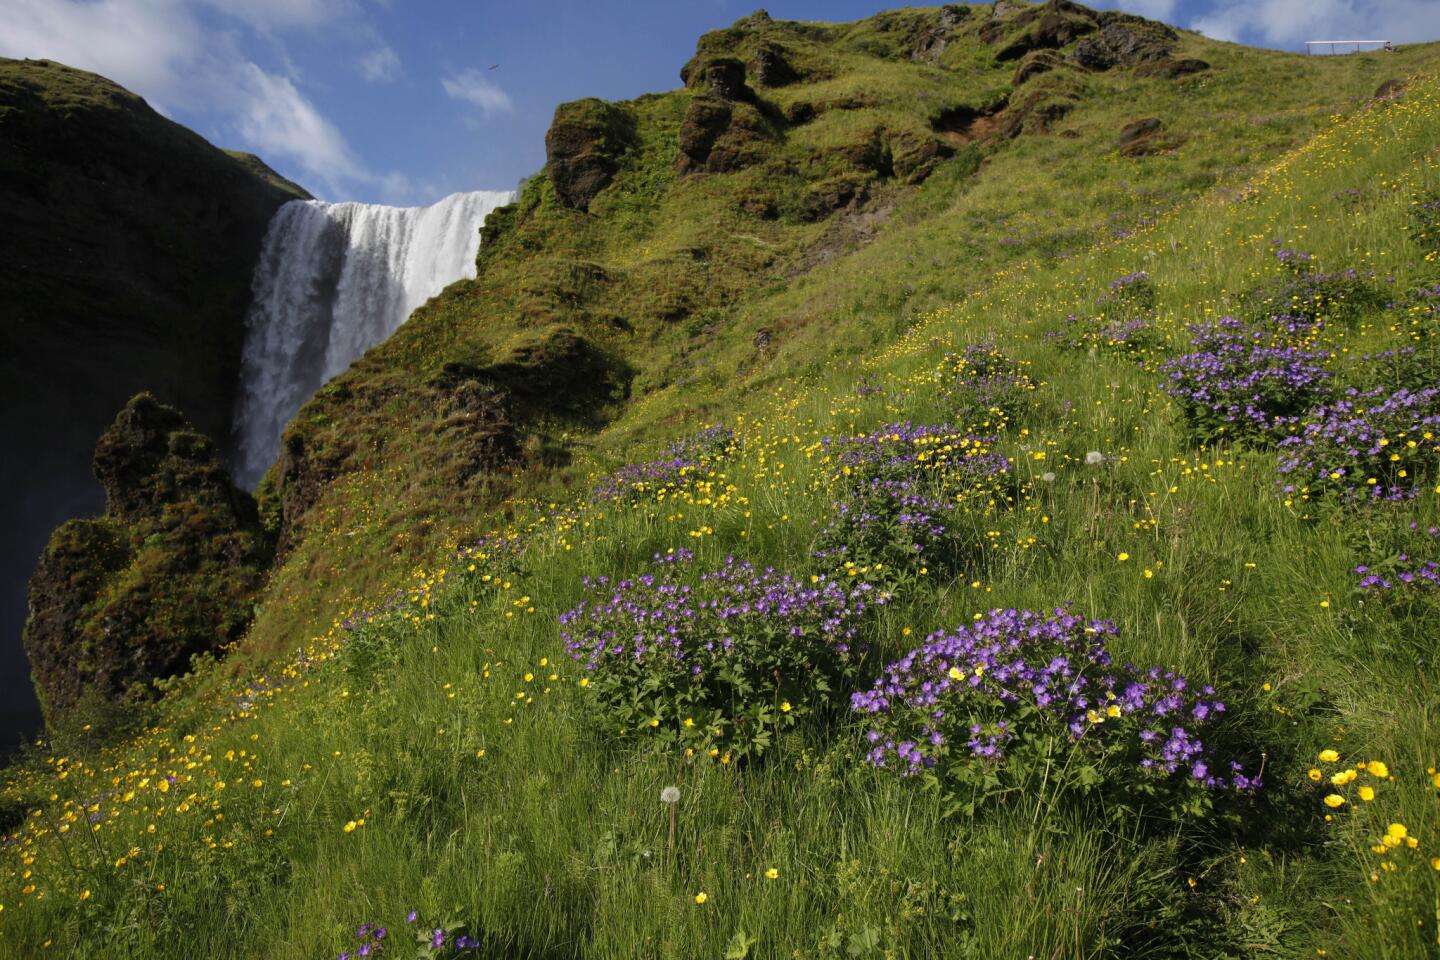 Skogarfoss waterfall, south Iceland